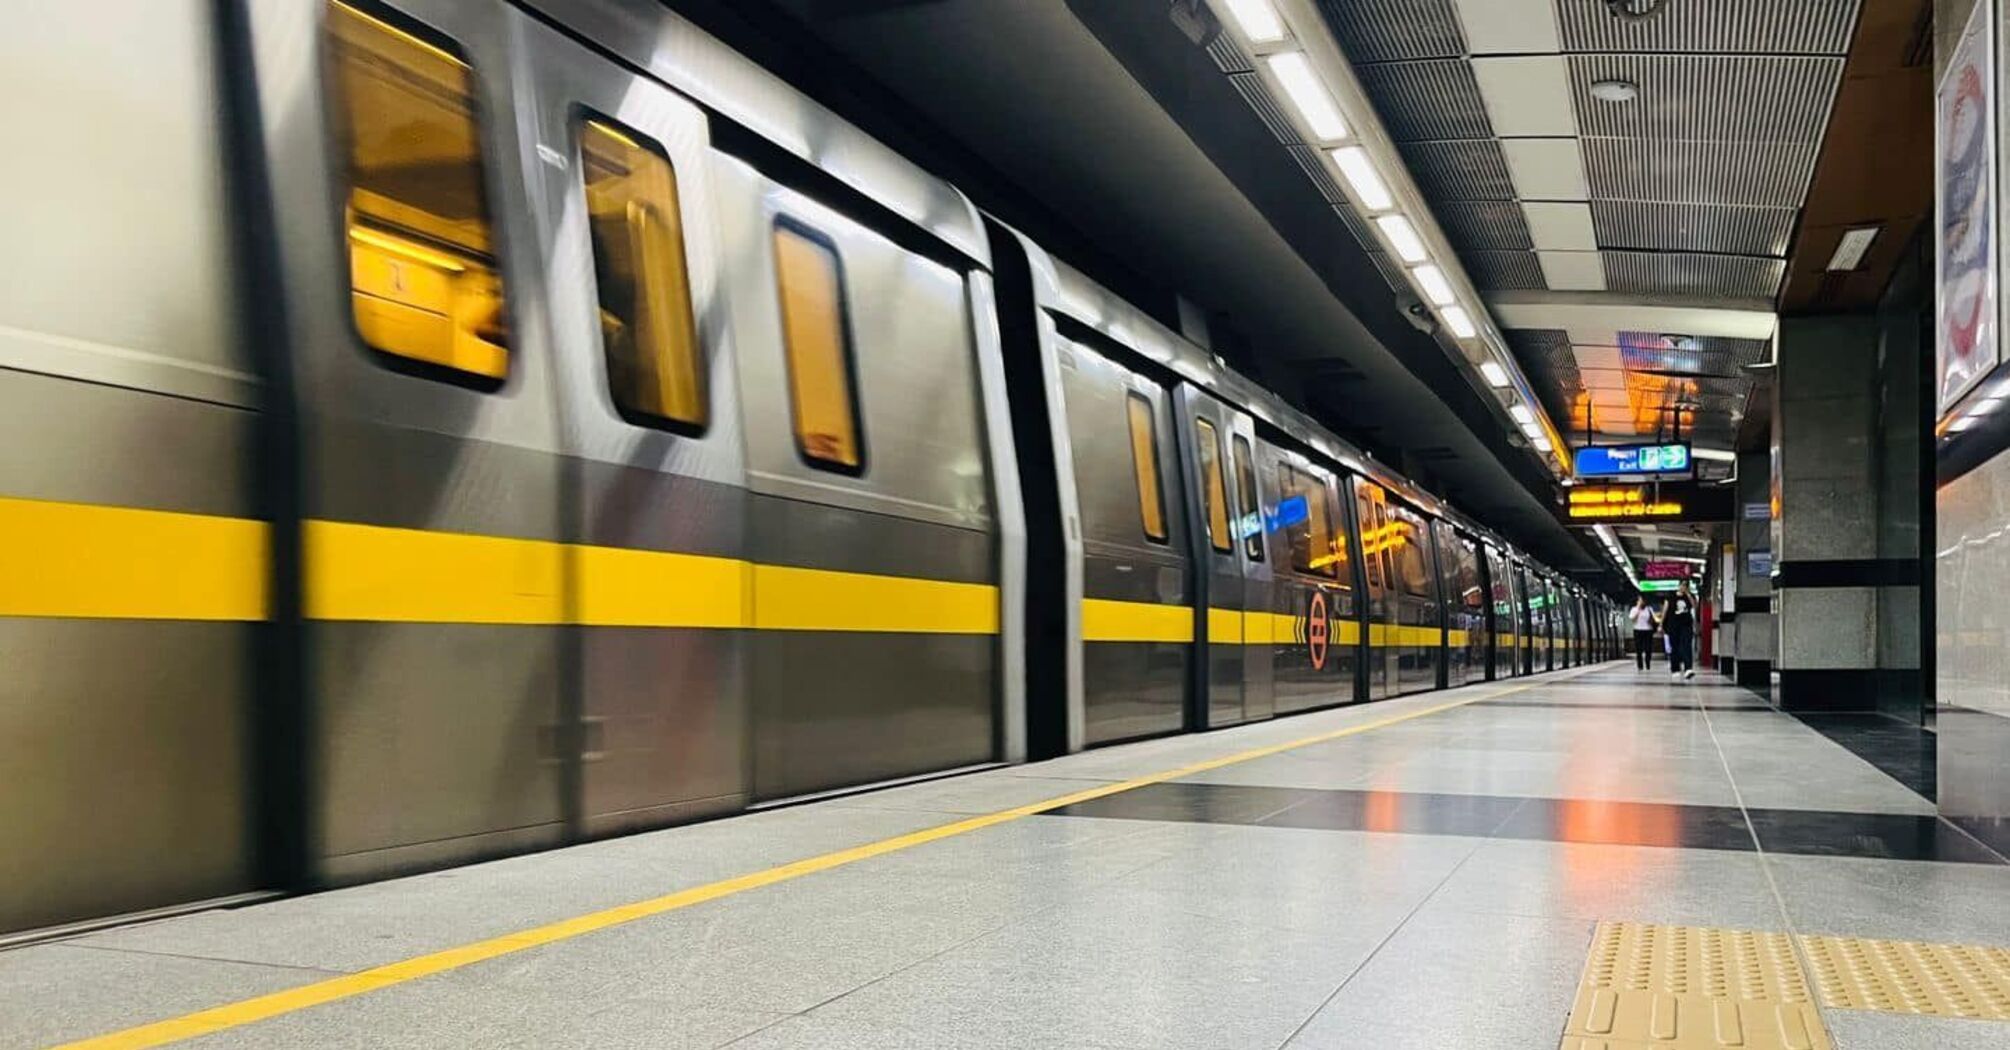 'Незаменимый вид трансепта': метро Дели зафиксировало наибольшее количество пассажиров